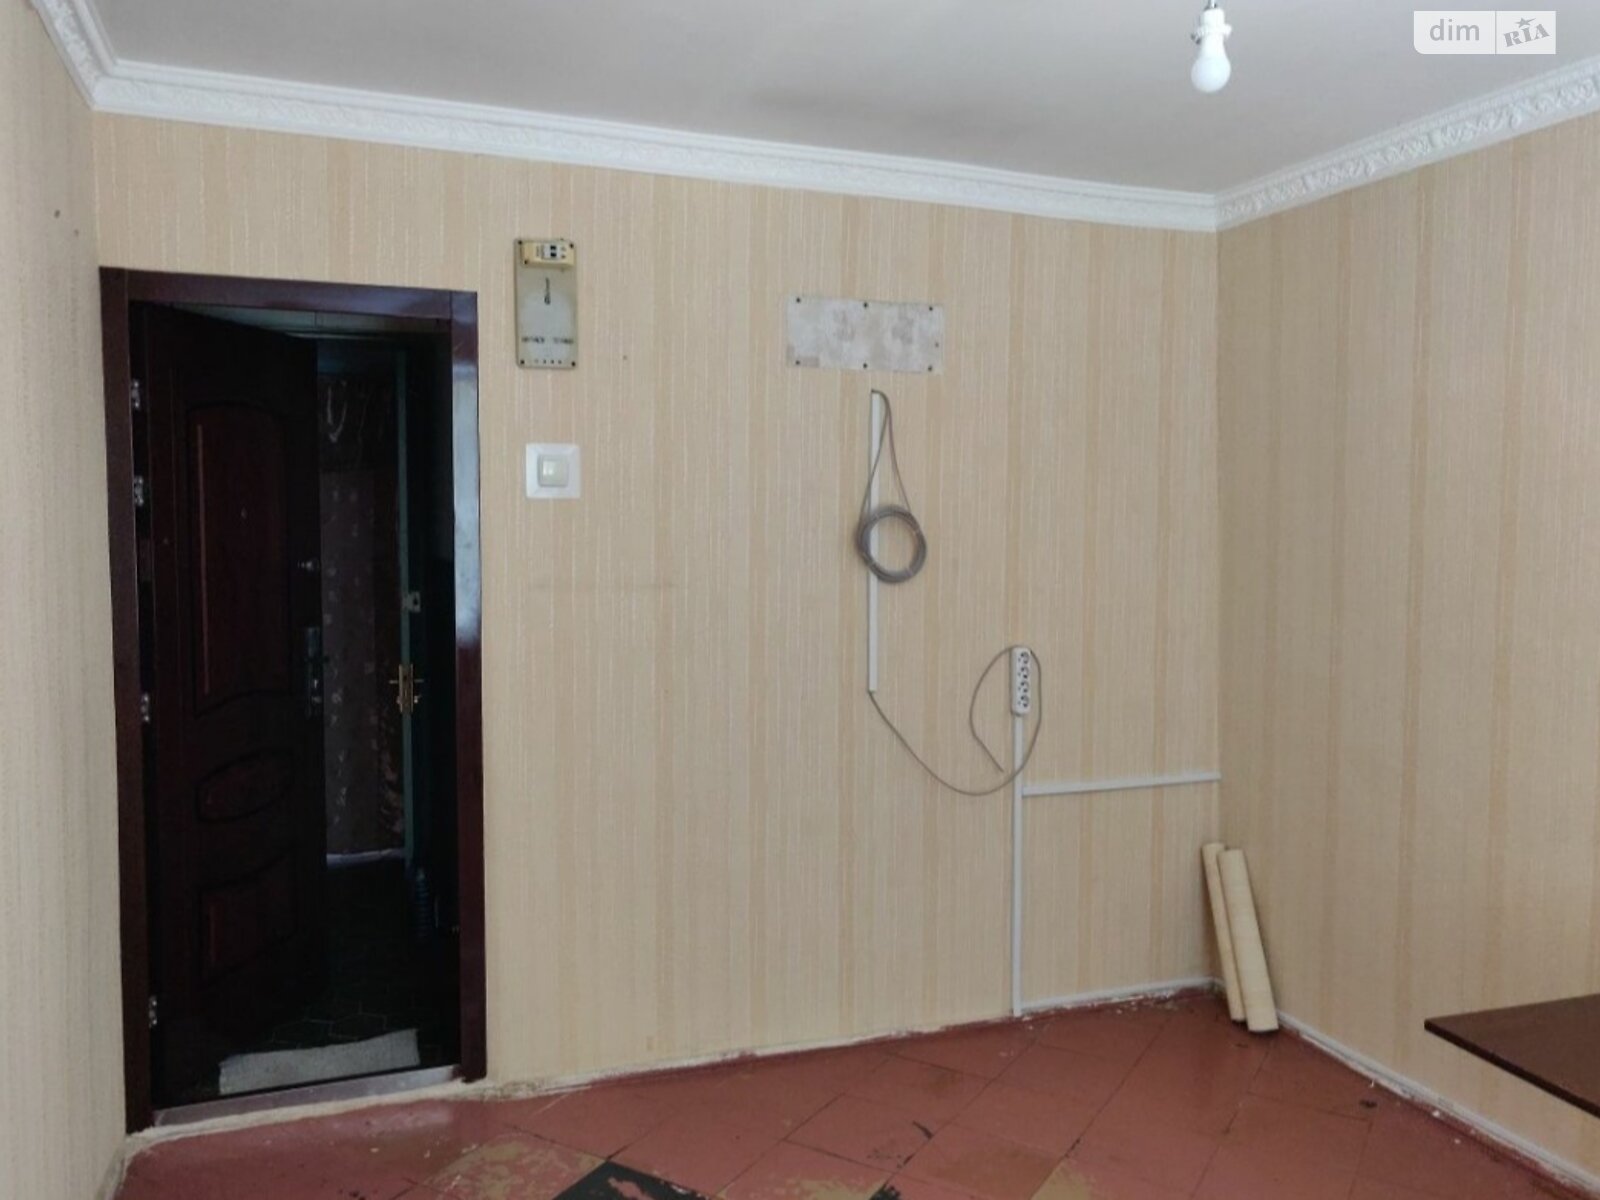 Кімната в Миколаєві на вул. Айвазовського 7 в районі Корабельний на продаж фото 1